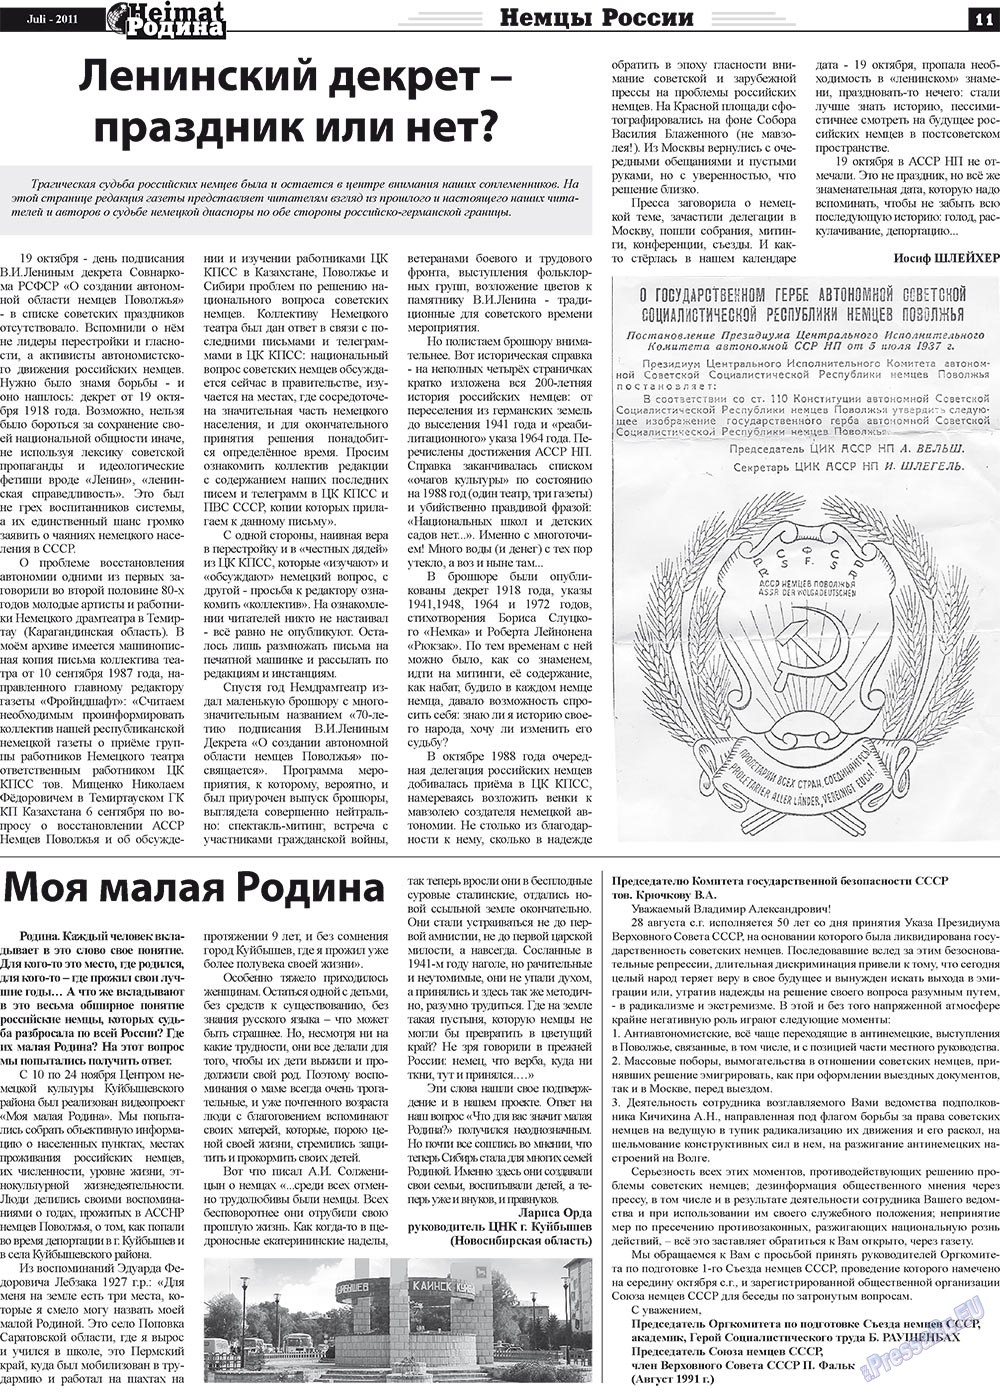 Heimat-Родина (газета). 2011 год, номер 7, стр. 11